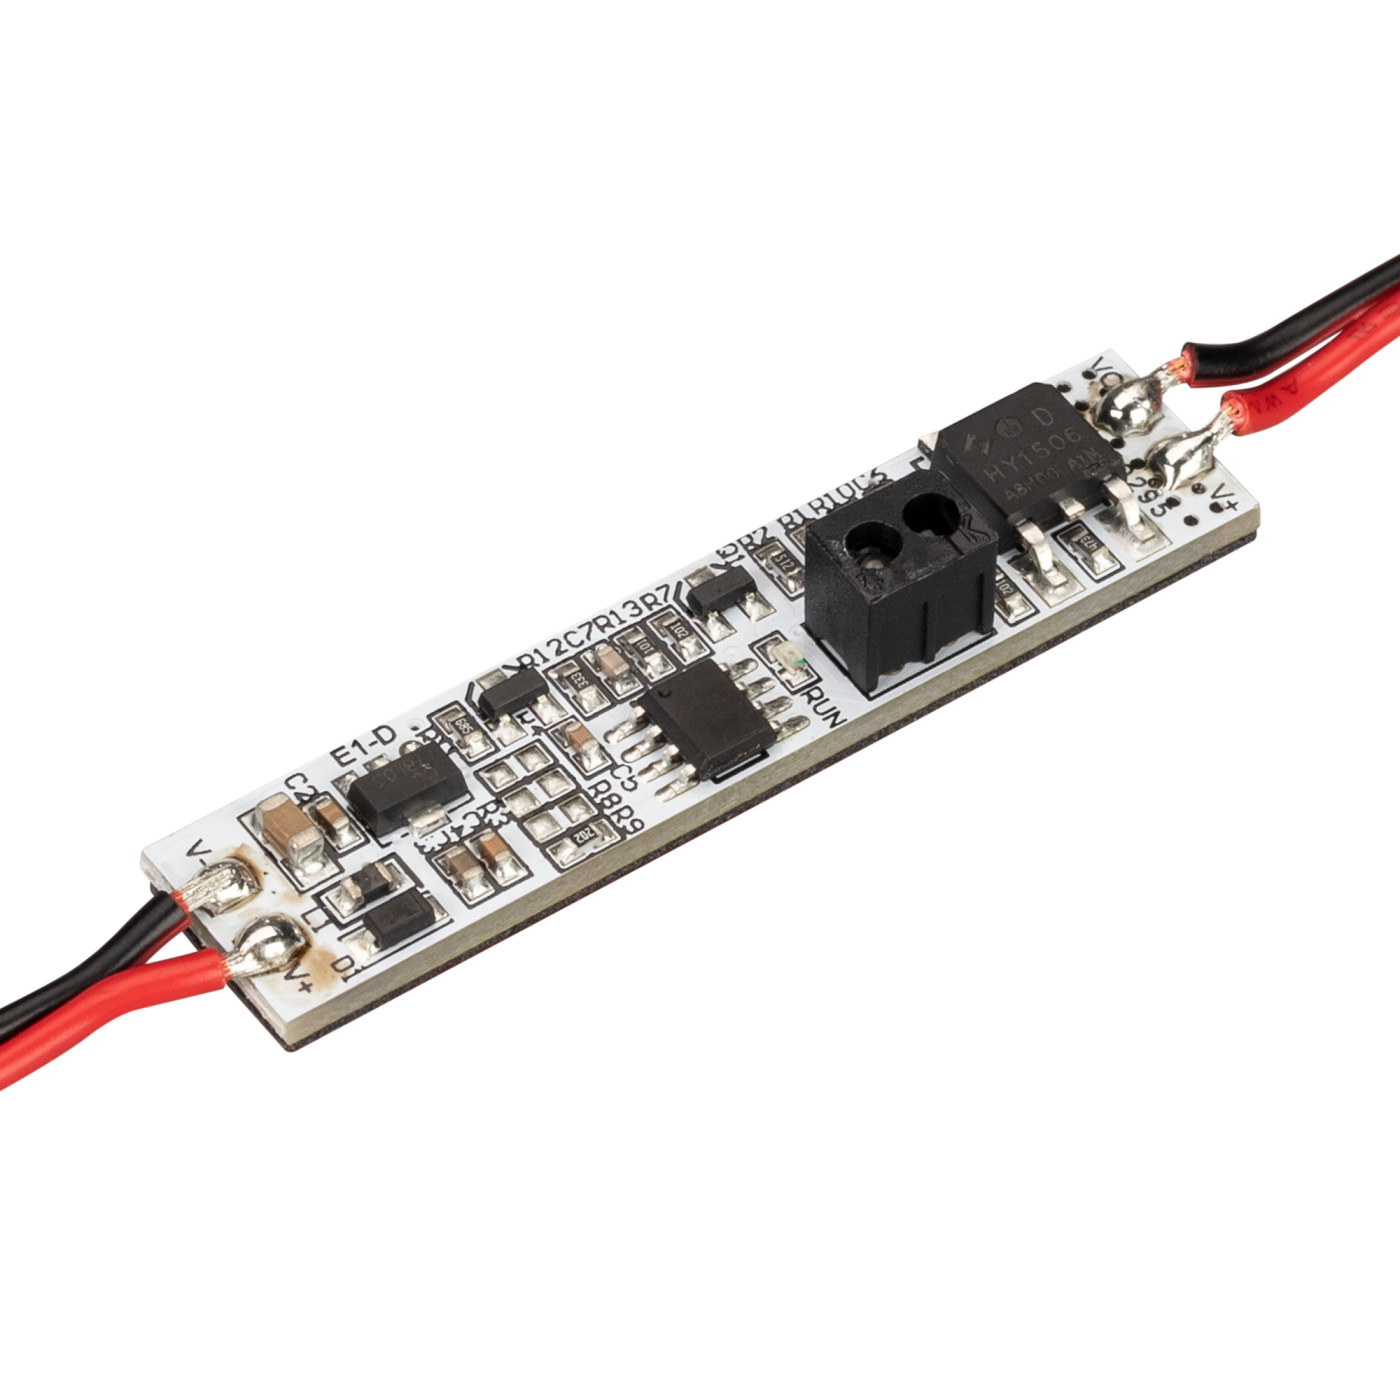 ИК-выключатель SMART-HAND (12-24V, 1х4А, 50x11mm) (Arlight, IP20 Пластик, 5 лет) контроллер выключатель sr 1009ac switch 230v 1 2a arlight ip20 пластик 3 года